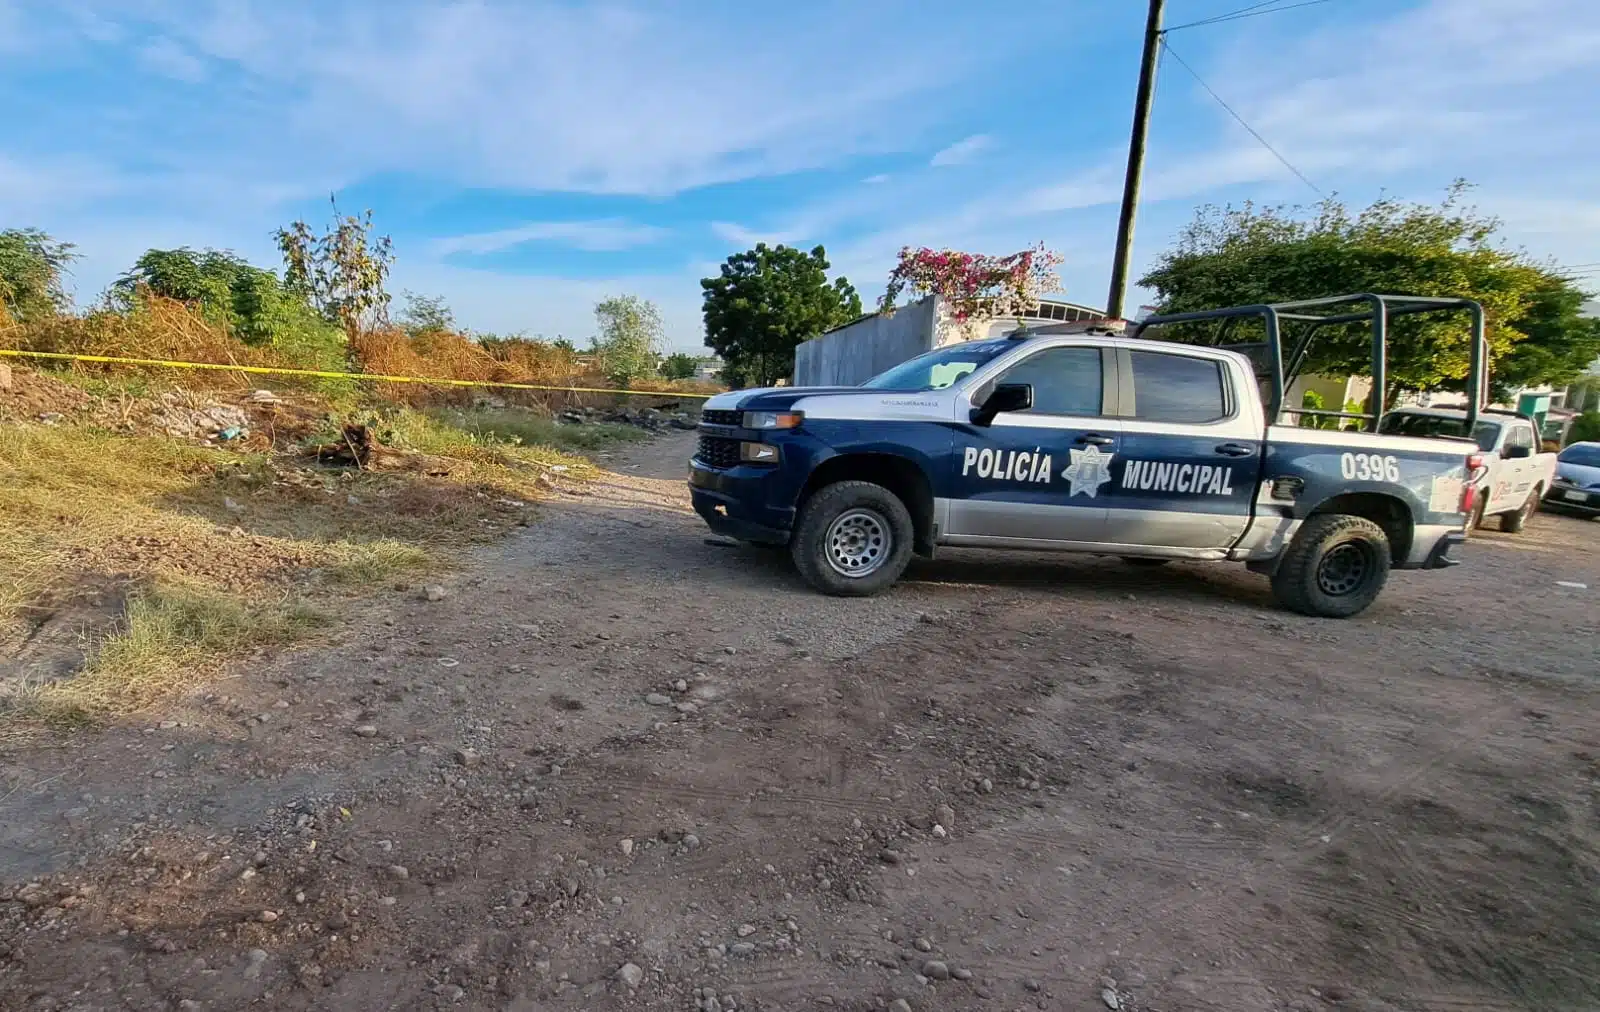 Camioneta de la Policía Municipal y cinta amarilla delimitando el área donde se encontró el cuerpo de un hombre asesinado en Culiacán